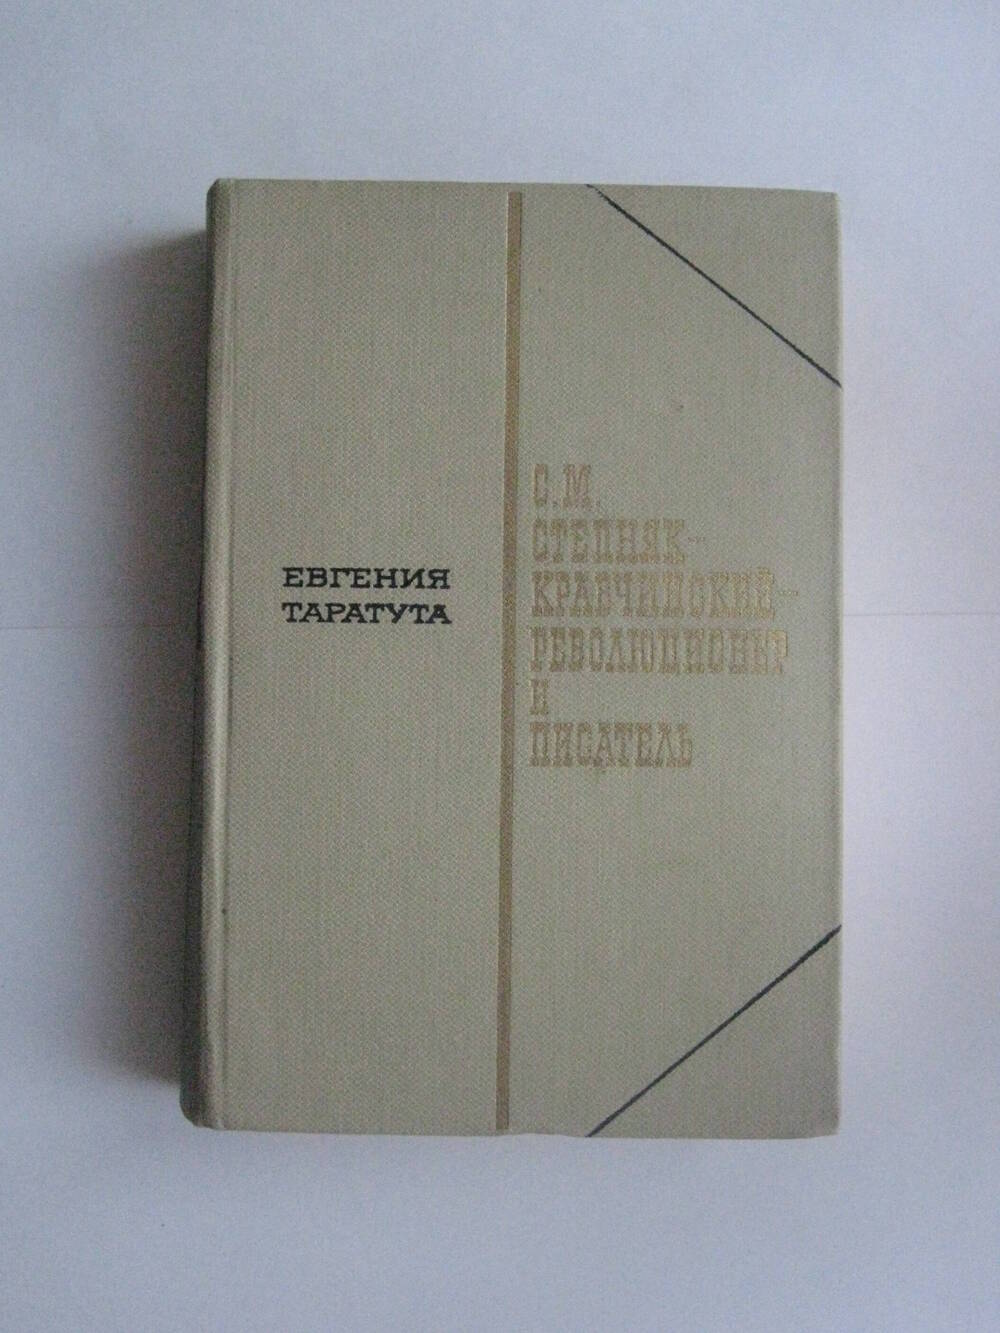 Книга. Таратута Е. С.М. Степняк-Кравчинский – революционер и писатель. – М.: Худ лит., 1973.